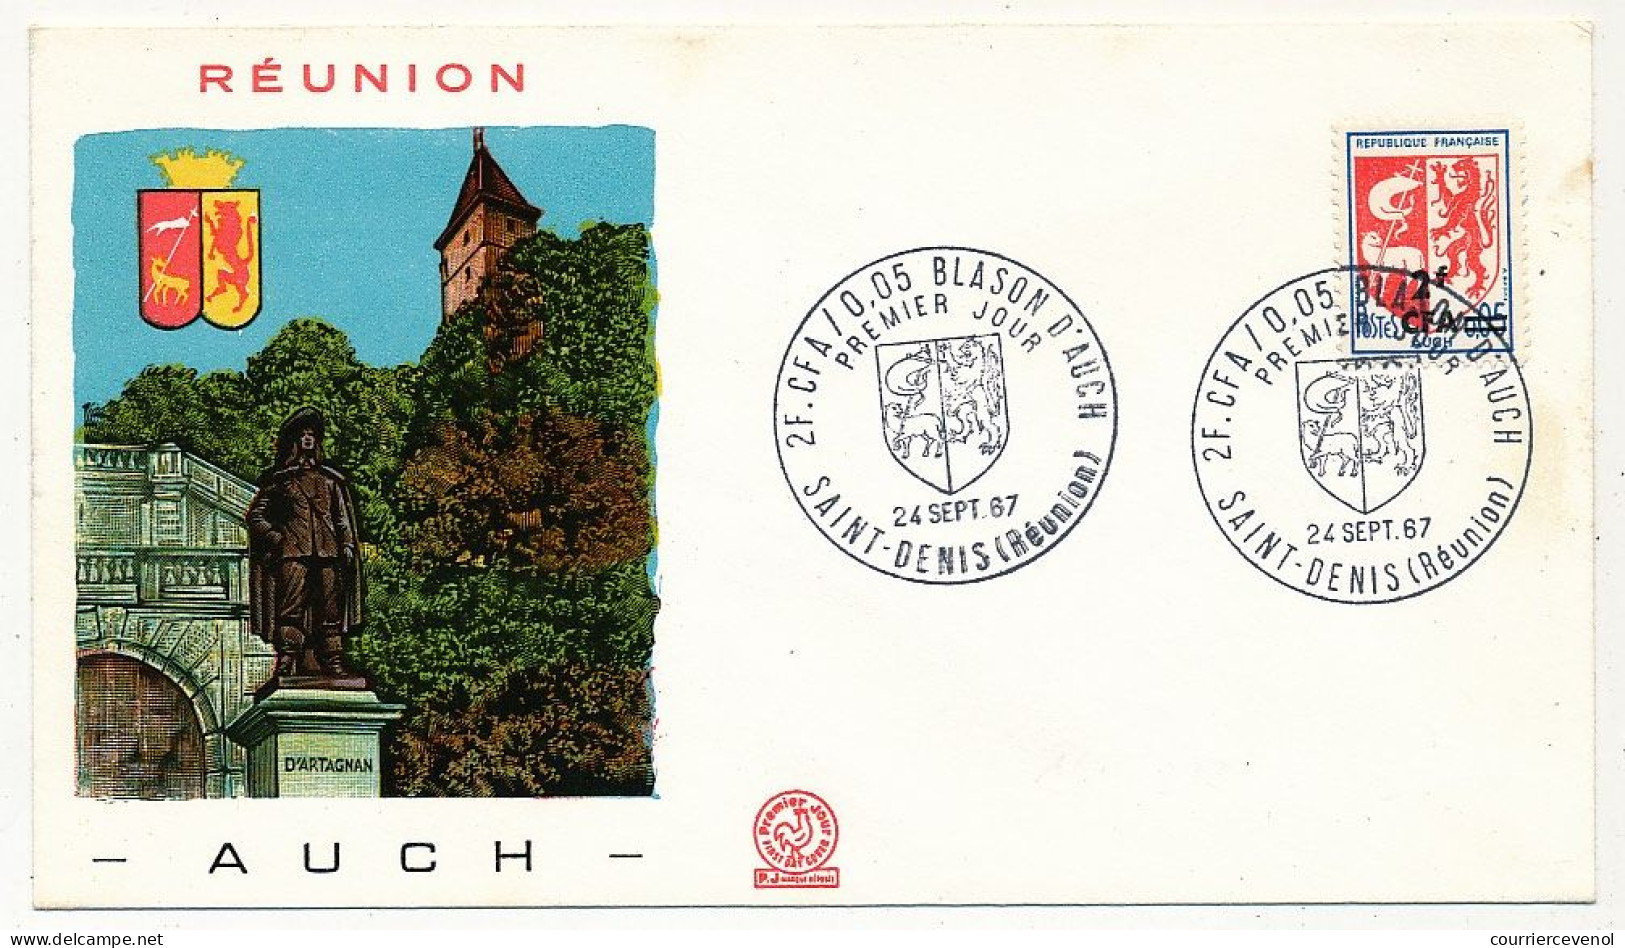 REUNION - Enveloppe FDC - 2F Blason D'Auch - Premier Jour - St Denis (Réunion) 24/12/1967 - Covers & Documents